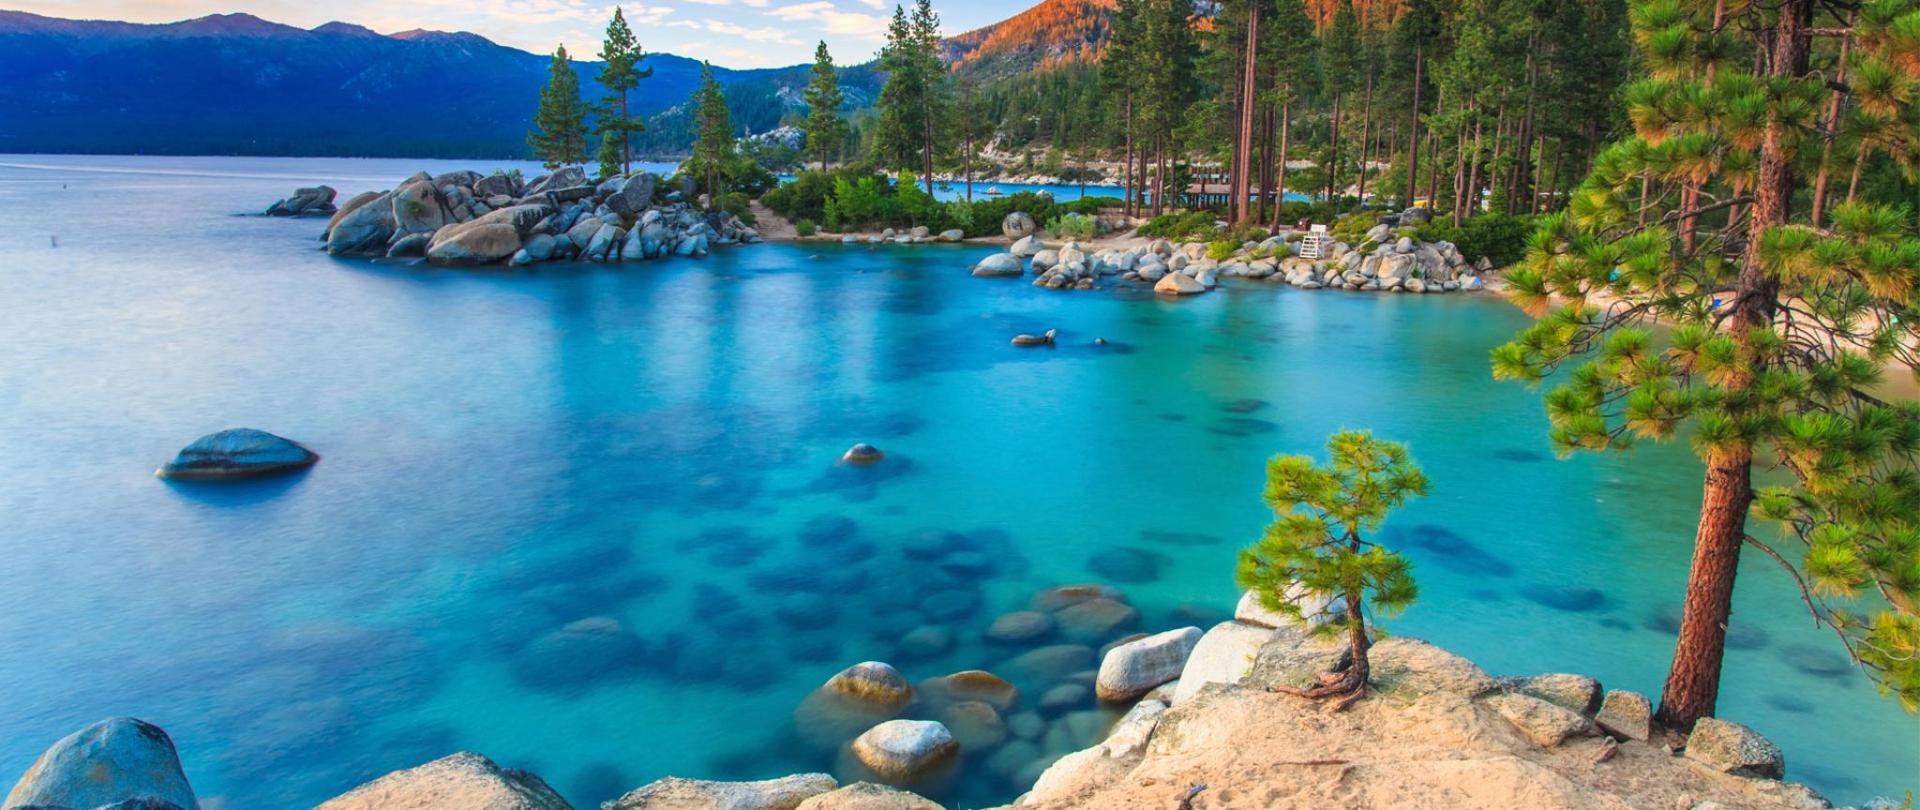 Lake-Tahoe-blue-water.jpg